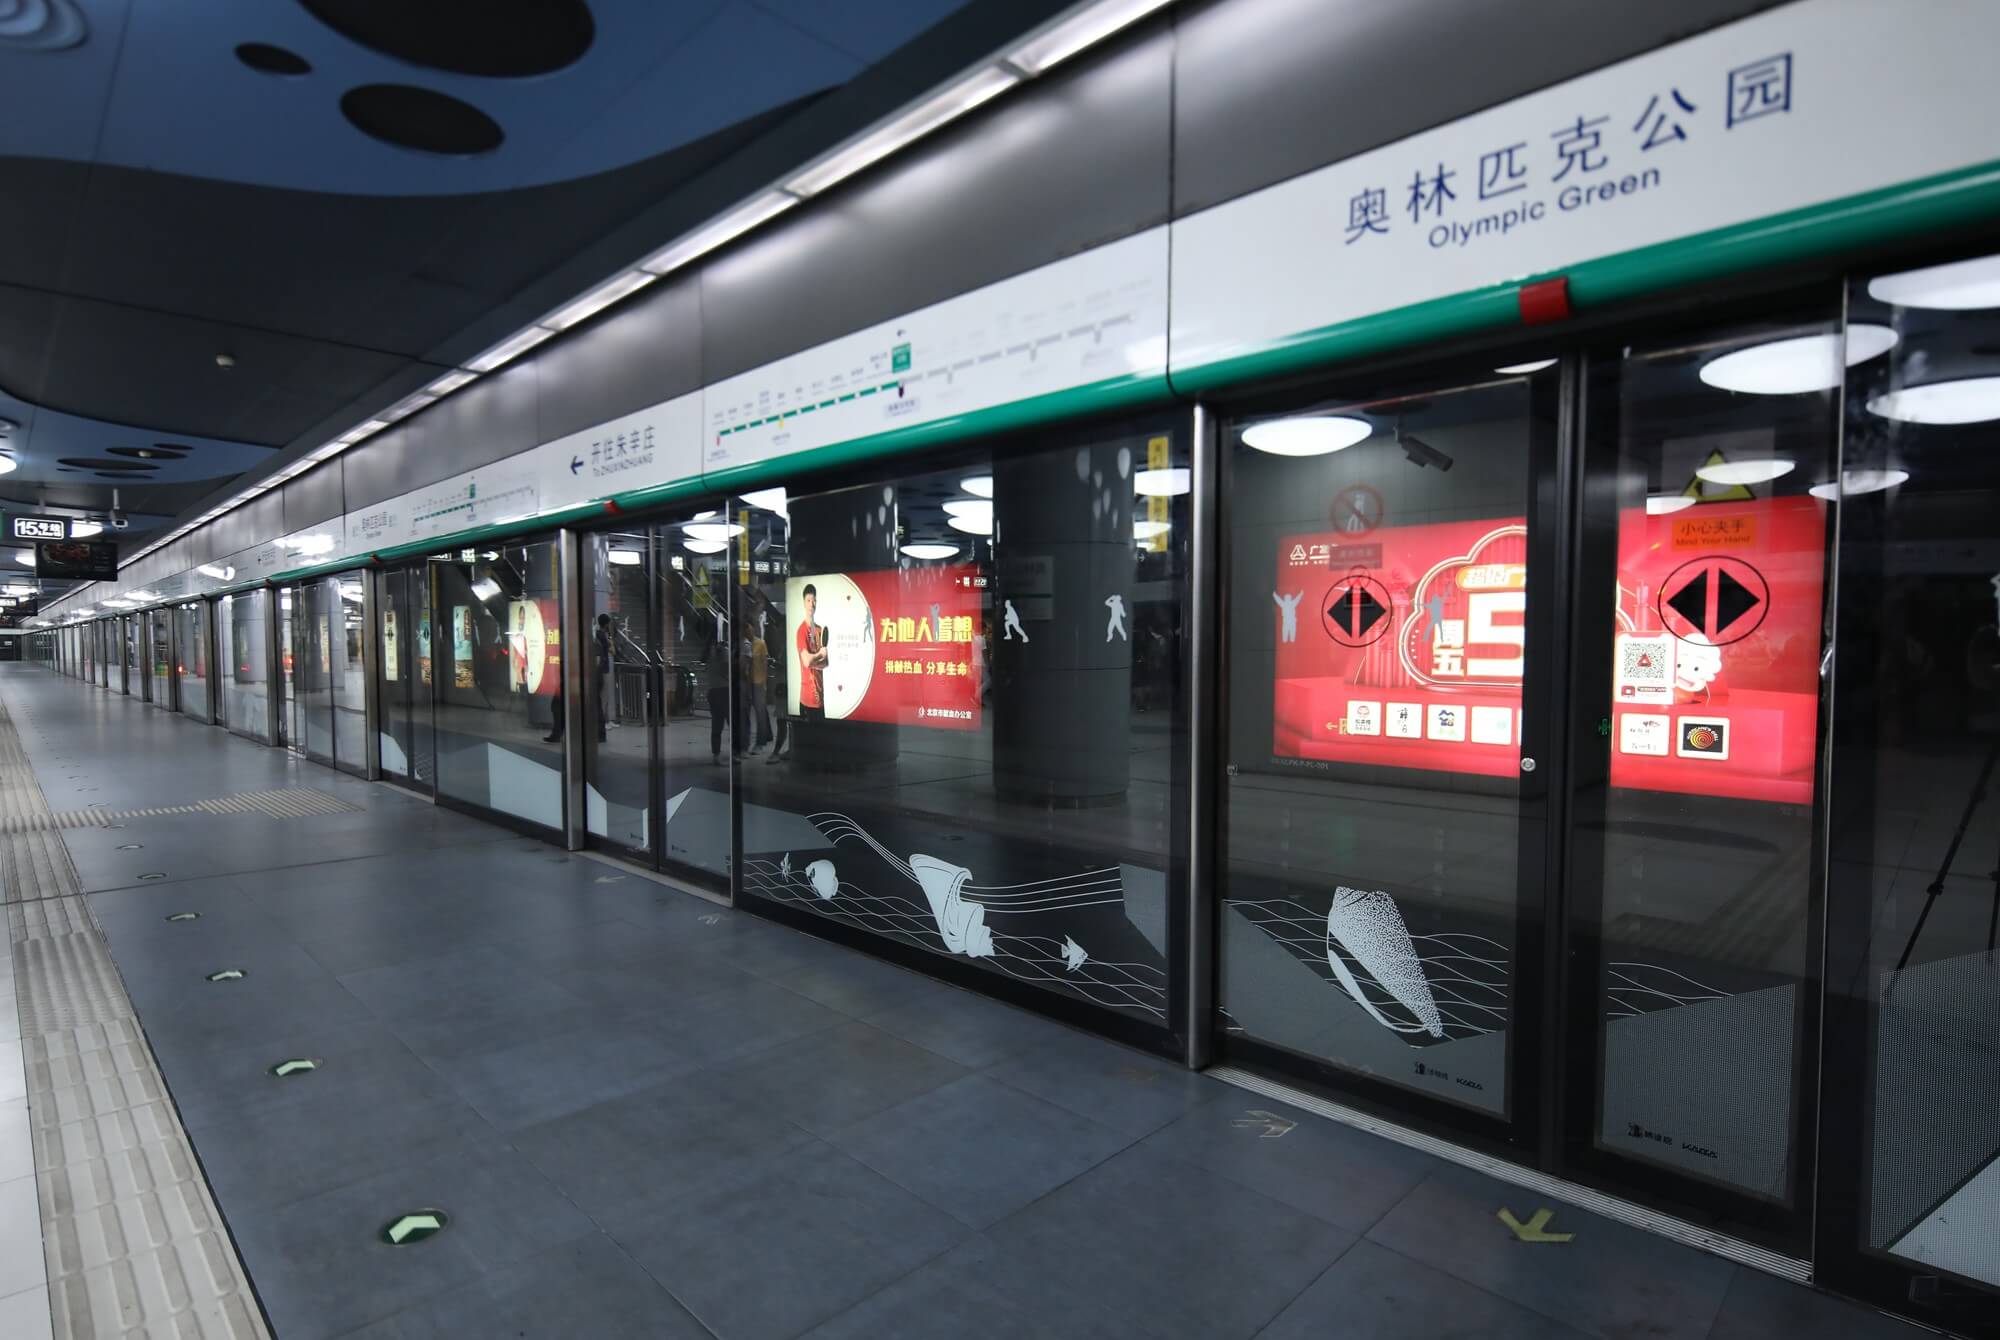 北京地铁官方网站图片